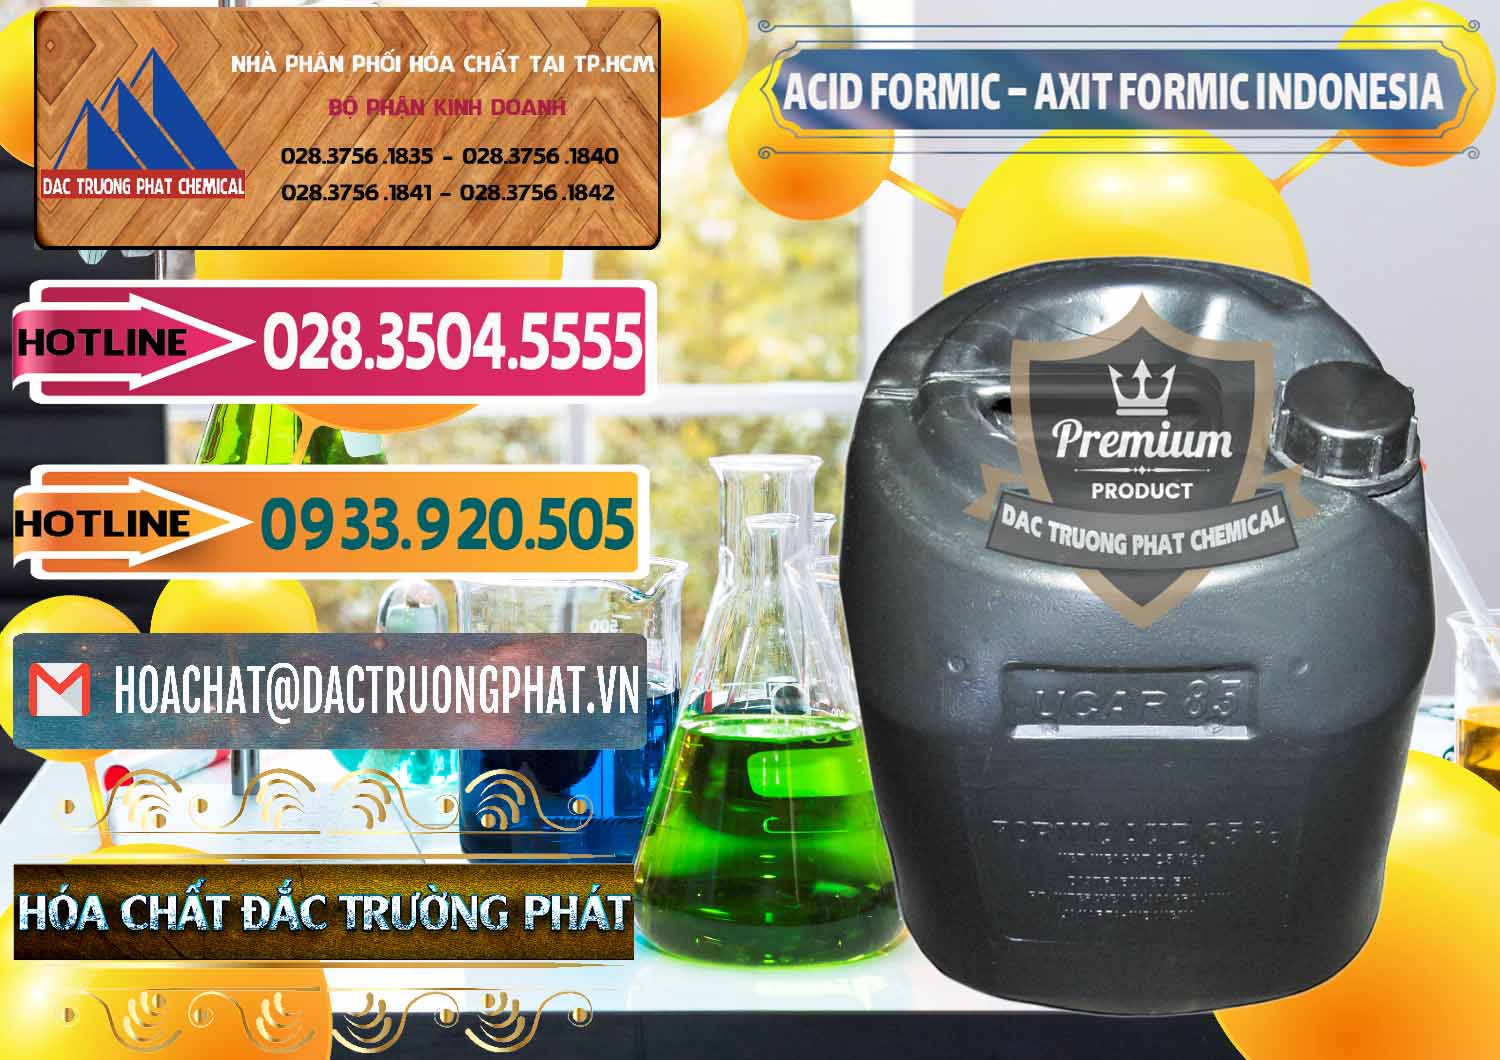 Công ty chuyên cung cấp & bán Acid Formic - Axit Formic Indonesia - 0026 - Cty nhập khẩu _ phân phối hóa chất tại TP.HCM - dactruongphat.vn